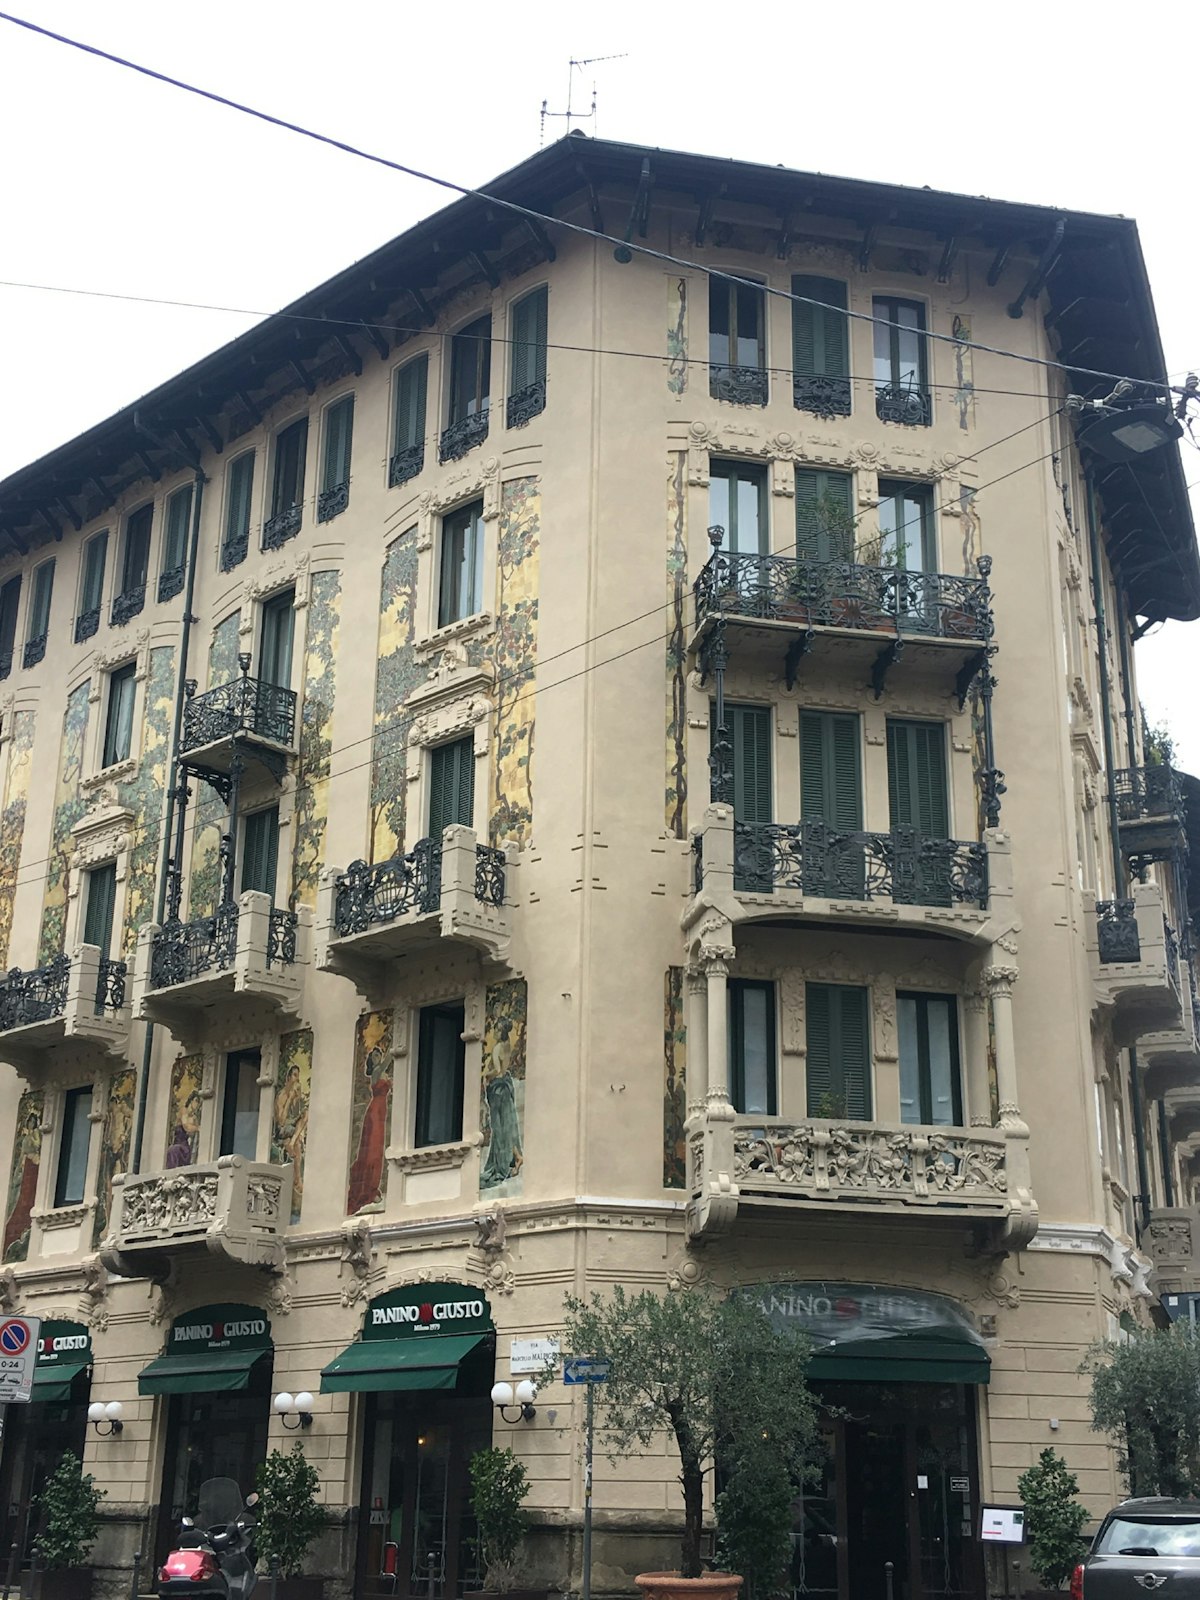 The exterior of Casa Galimberti